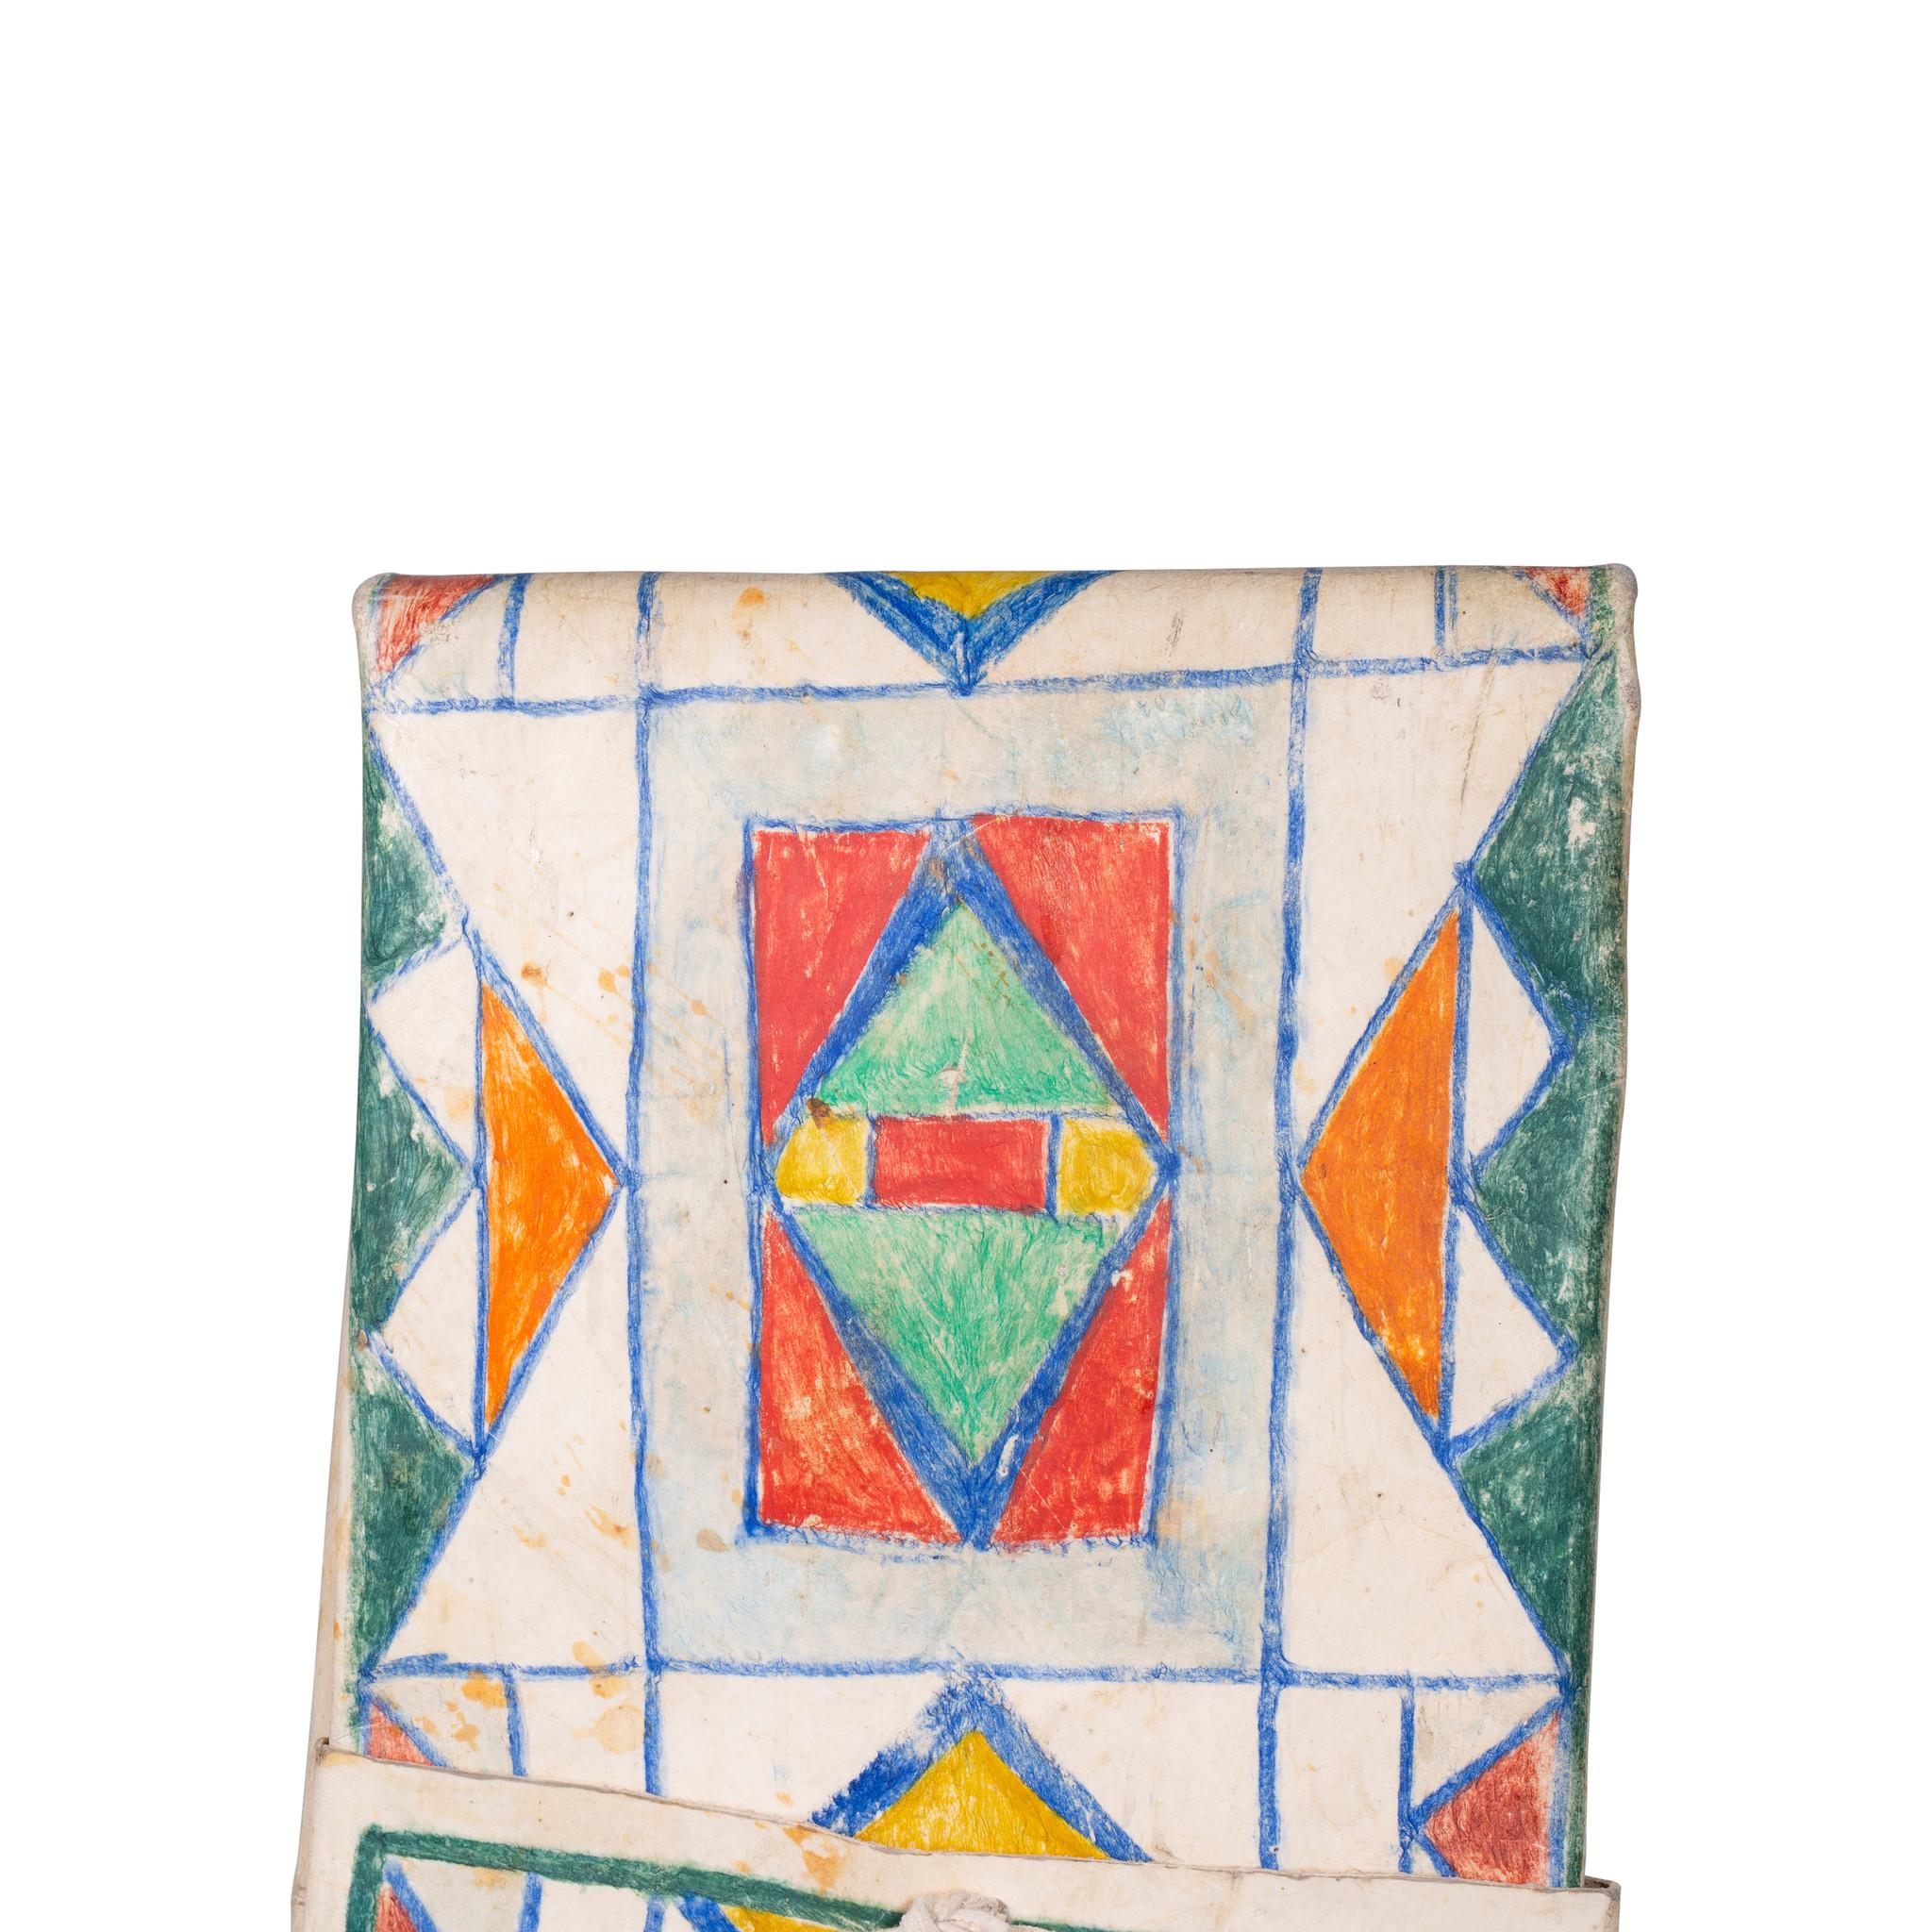 Enveloppe de parfleche peinte en vert, bleu, orange, jaune et rouge.

Période : vers 1900
Origine : Plateau
Taille : 28